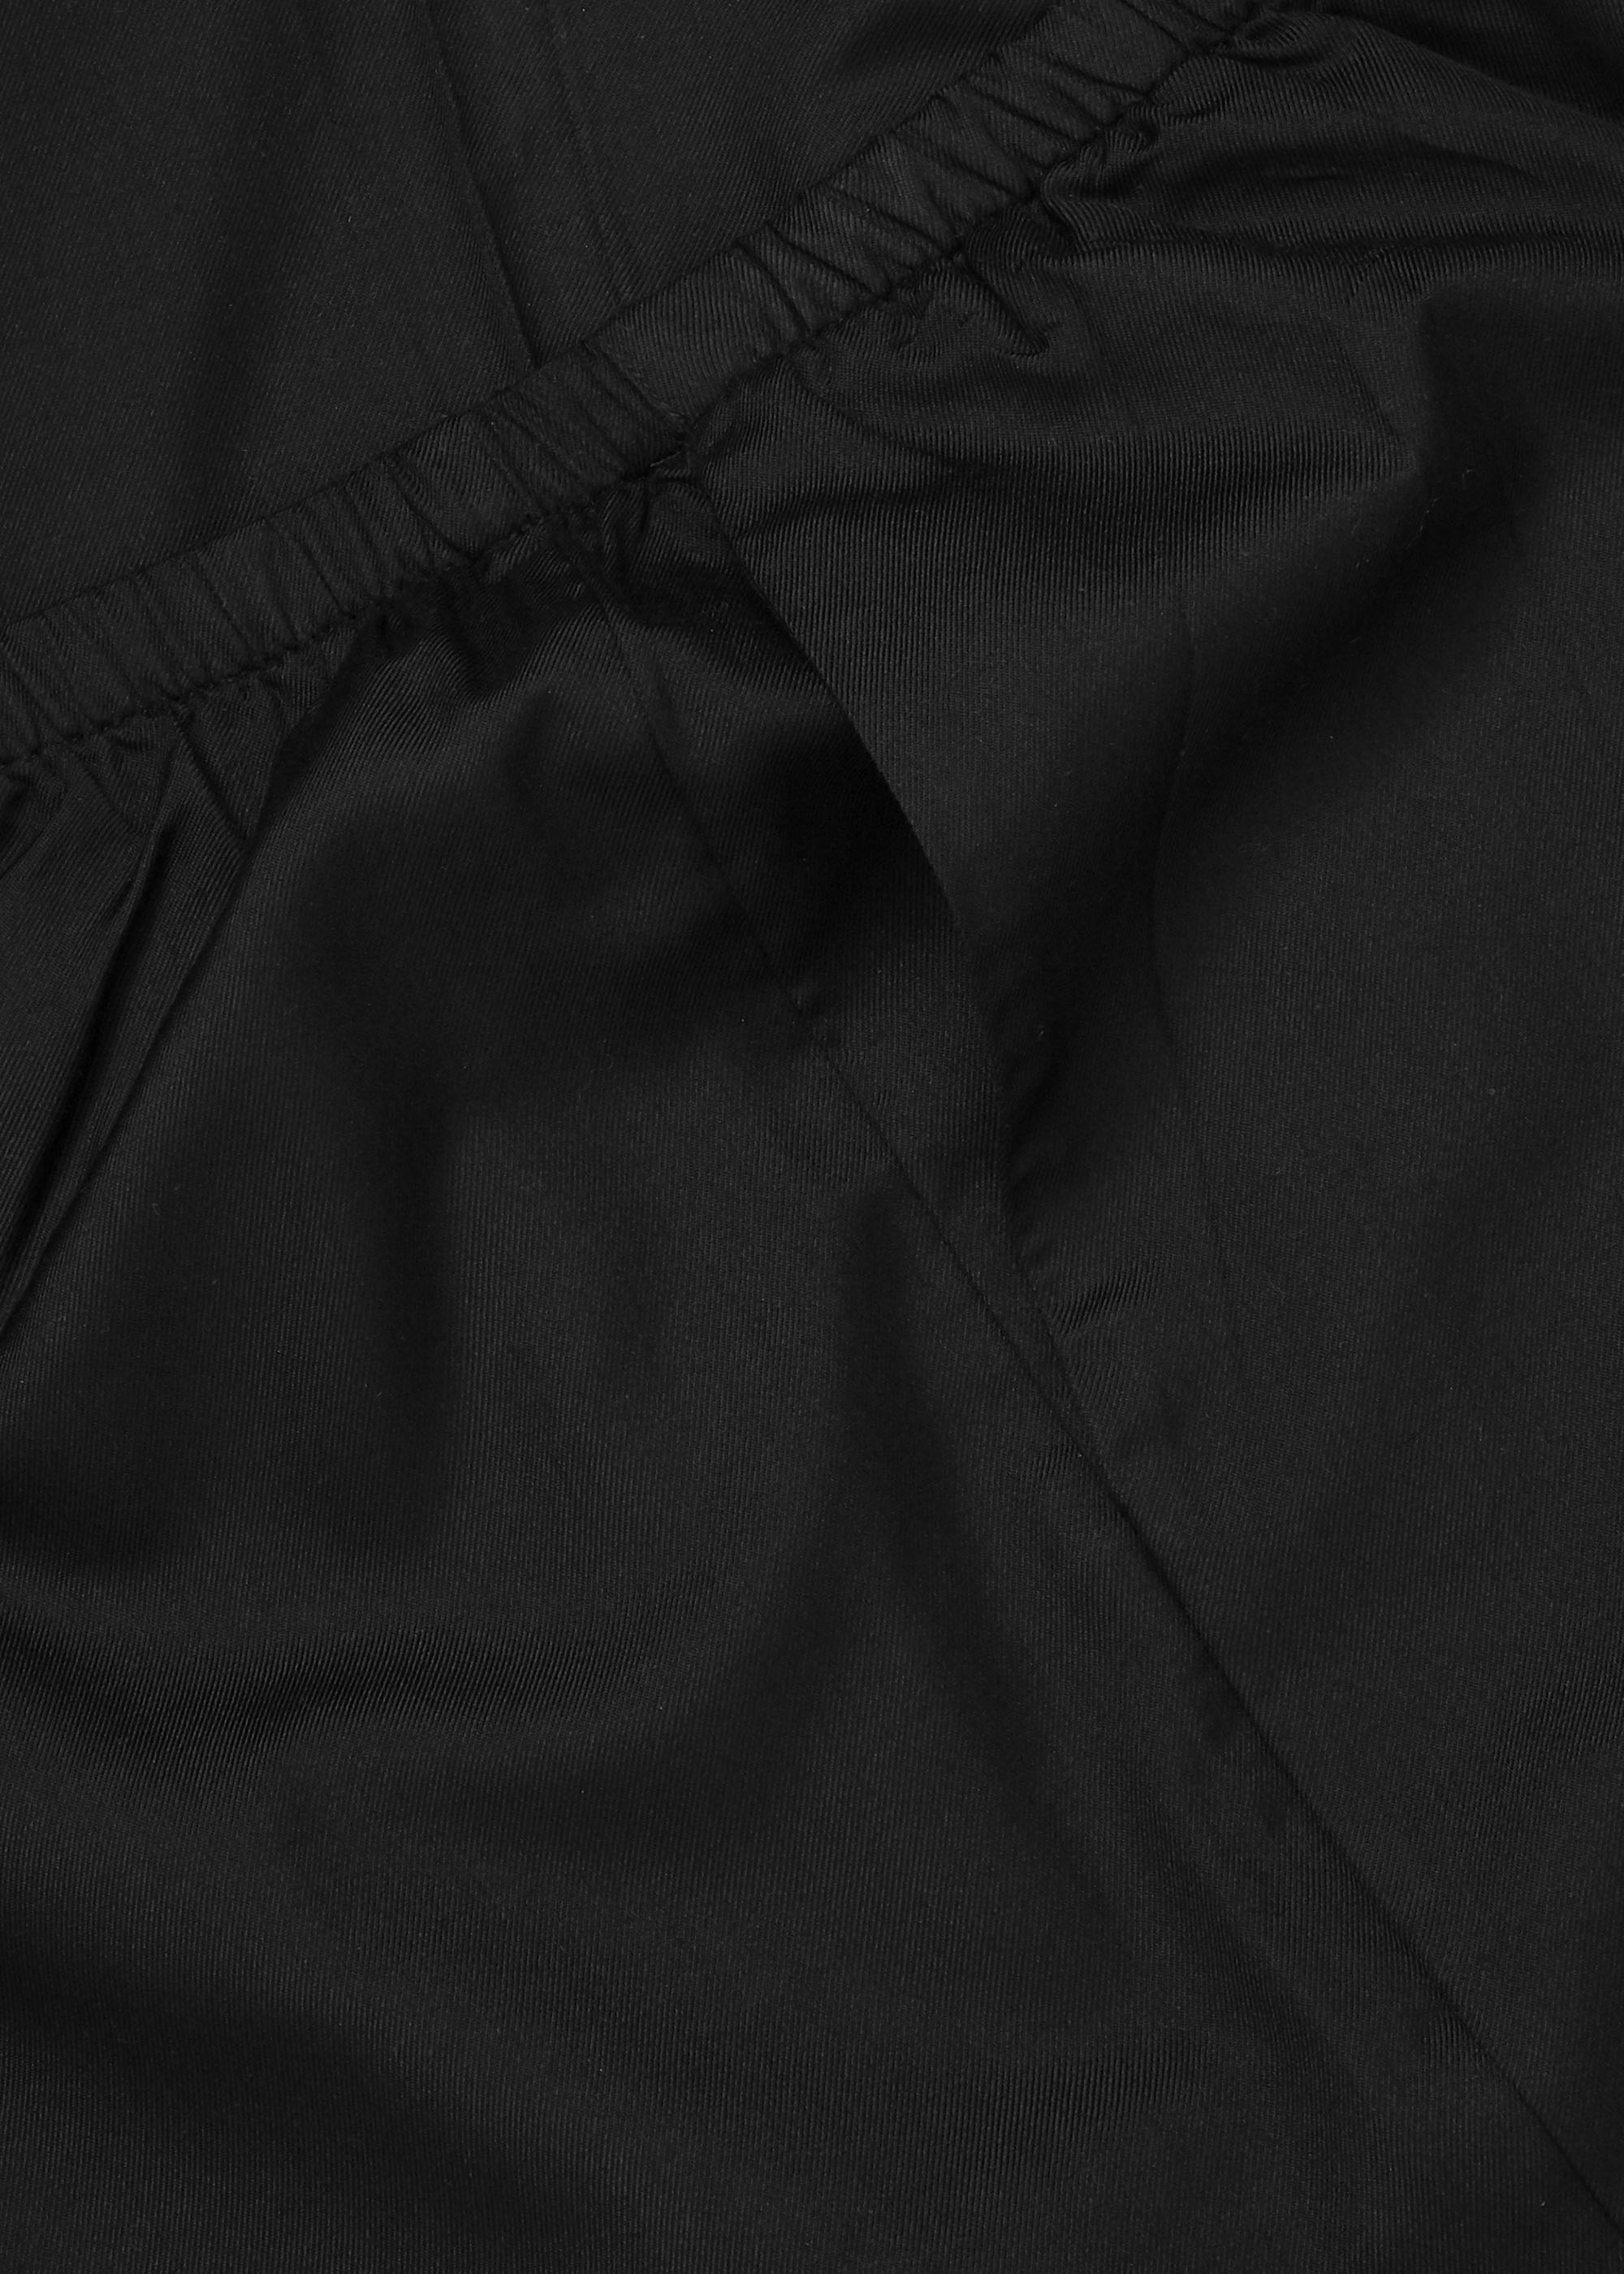 Hosen & Shorts - Alba Silk Pants Thumbnail